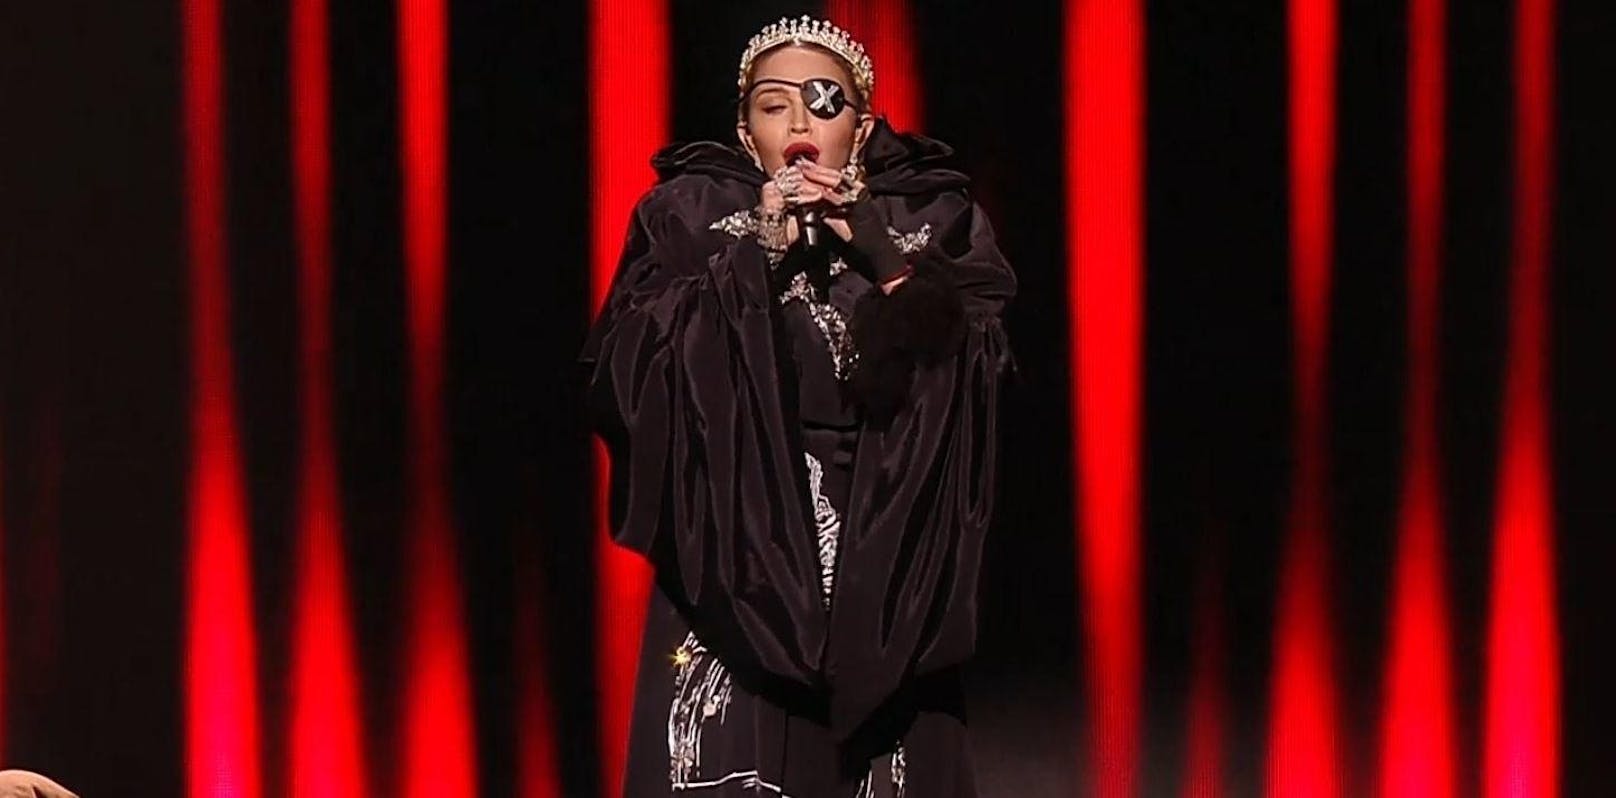 19.05.2019: Kurz nach Mitternacht tritt Madonna beim Song-Contest-Finale in Tel Aviv auf. Ihre beiden Songs "Like a Prayer" und "Future" verpfuscht sie total. Kaum ein Ton sitzt, die Queen of Pop wird im Netz durch den Kakao gezogen <a href="https://www.heute.at/szene/musik/story/Madonna-Song-Contest-ESC--59636468">Mehr dazu gibt's hier</a>